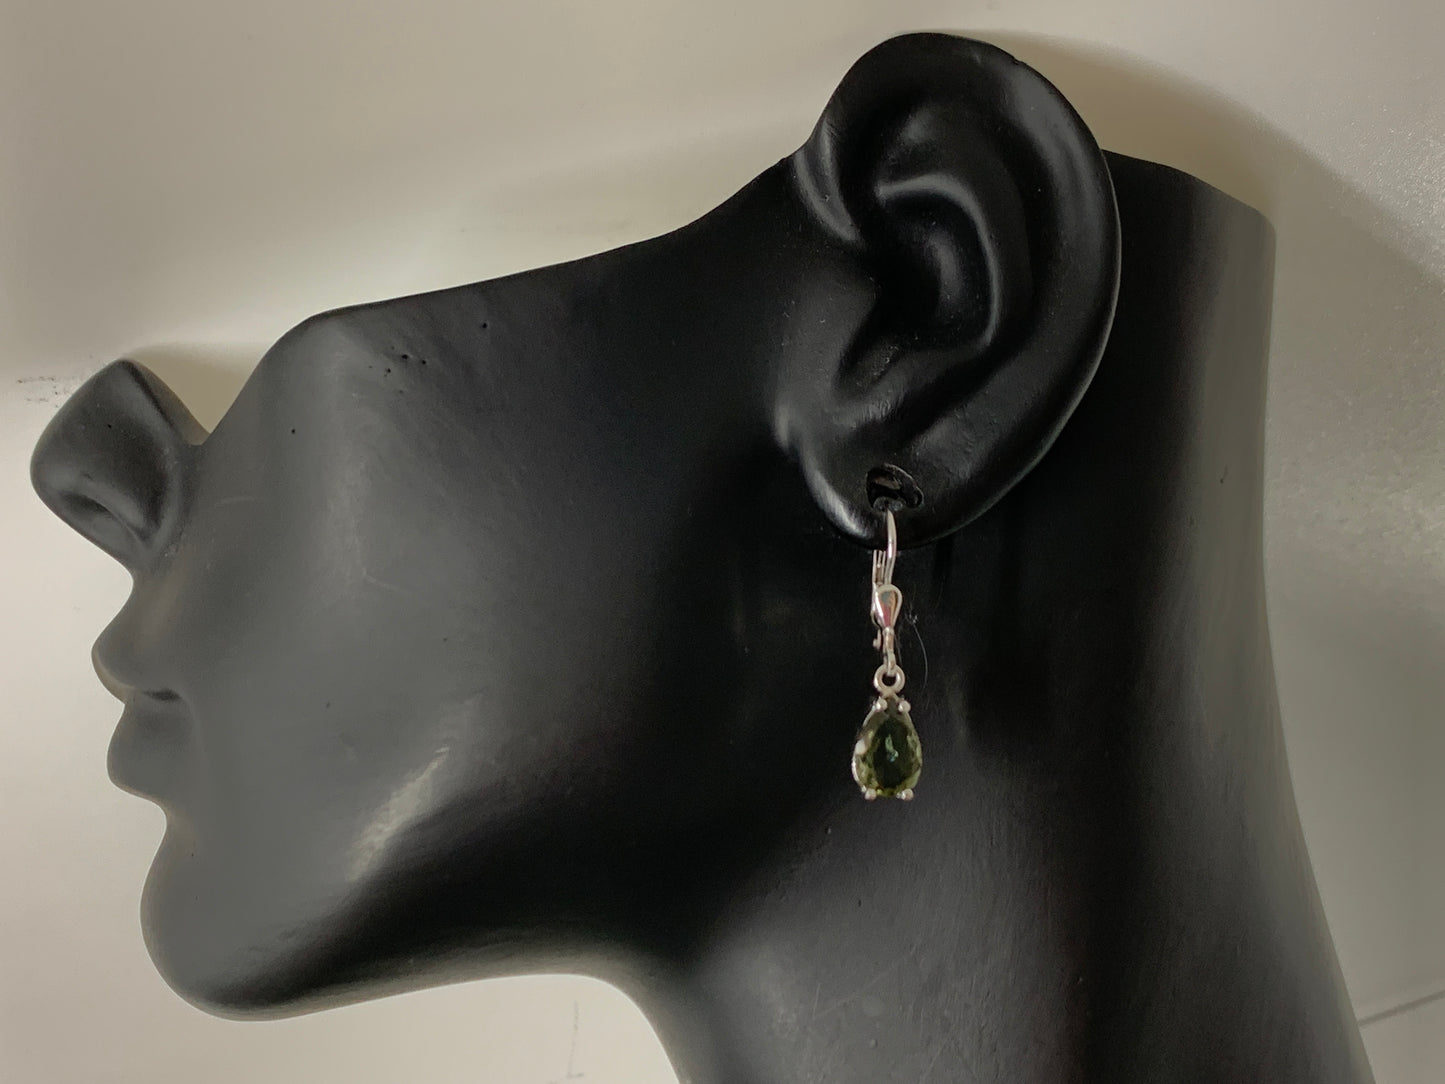 Faceted Moldavite pear 7x10mm earrings